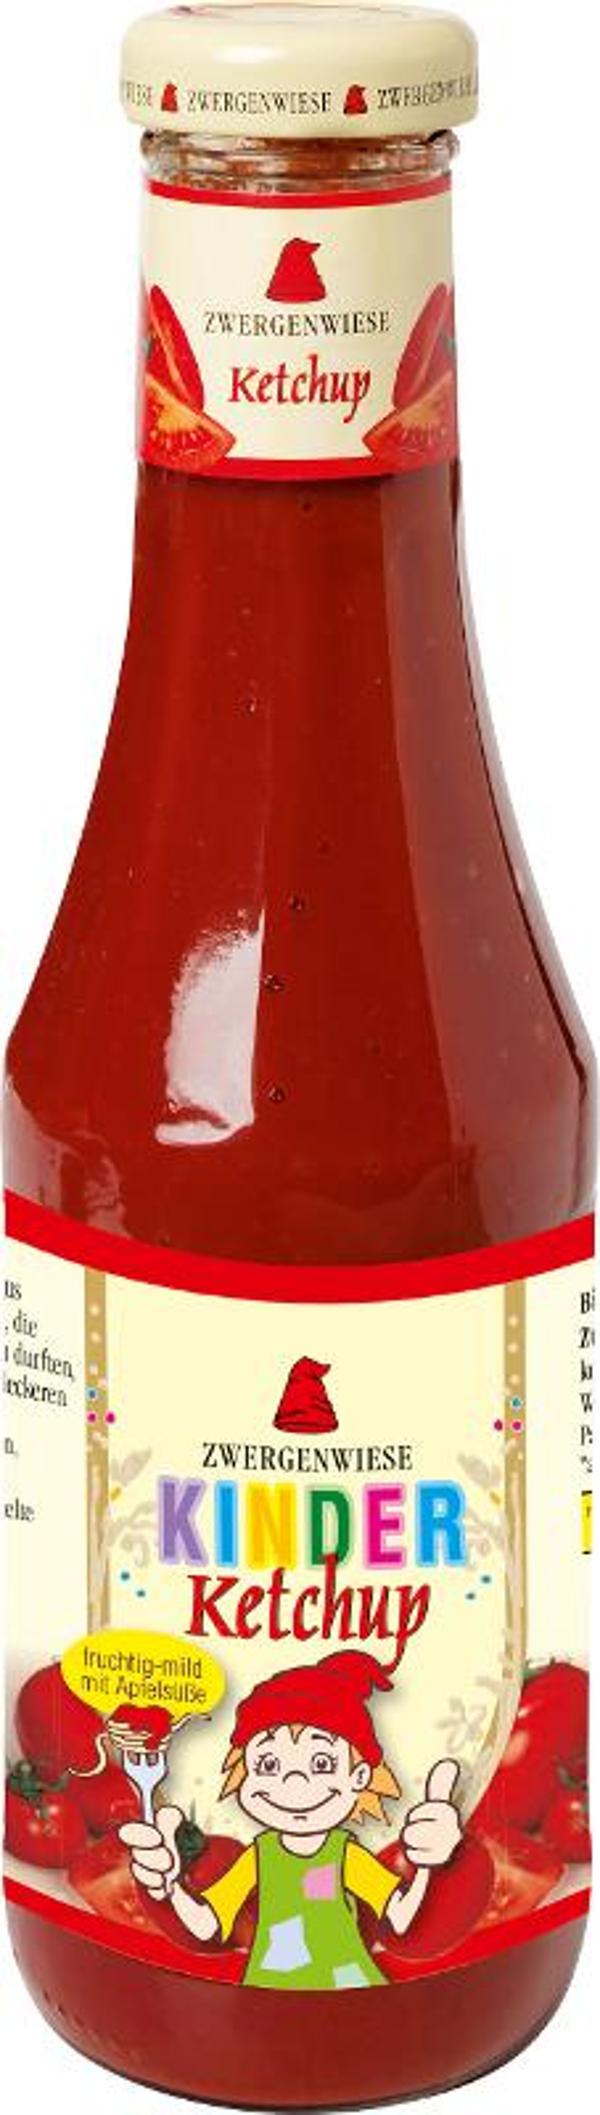 Produktfoto zu Ketchup für Kinder 500g